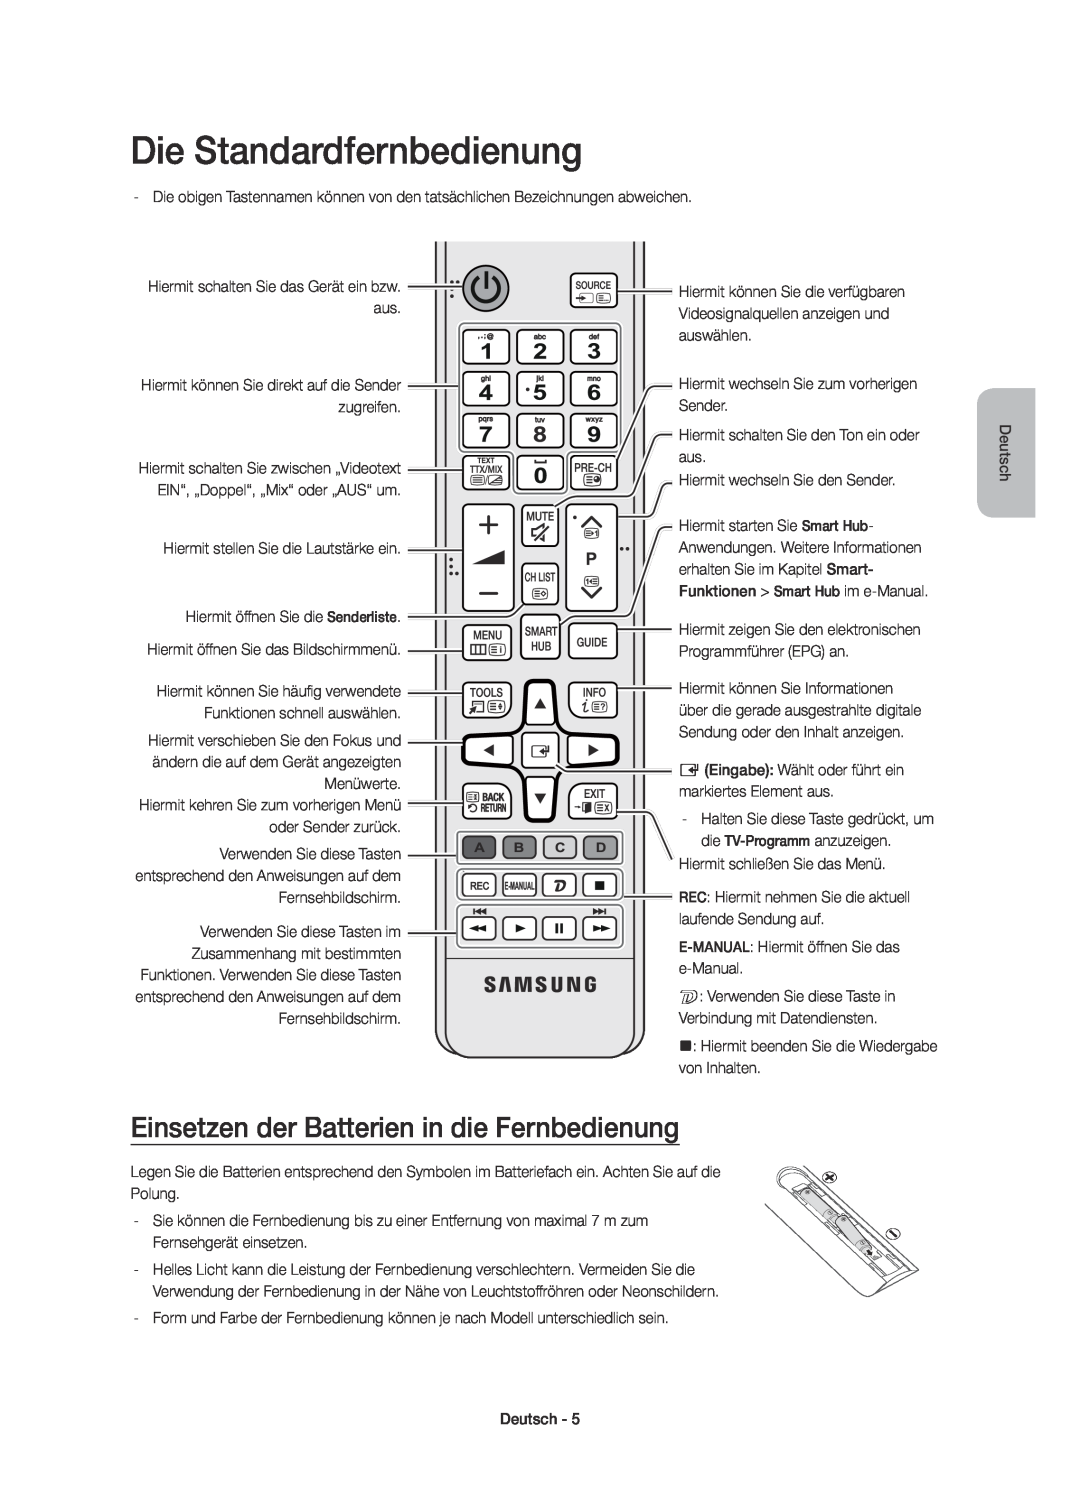 Samsung UE65JU7500TXXU, UE48JU7500TXXC manual Die Standardfernbedienung, Einsetzen der Batterien in die Fernbedienung 